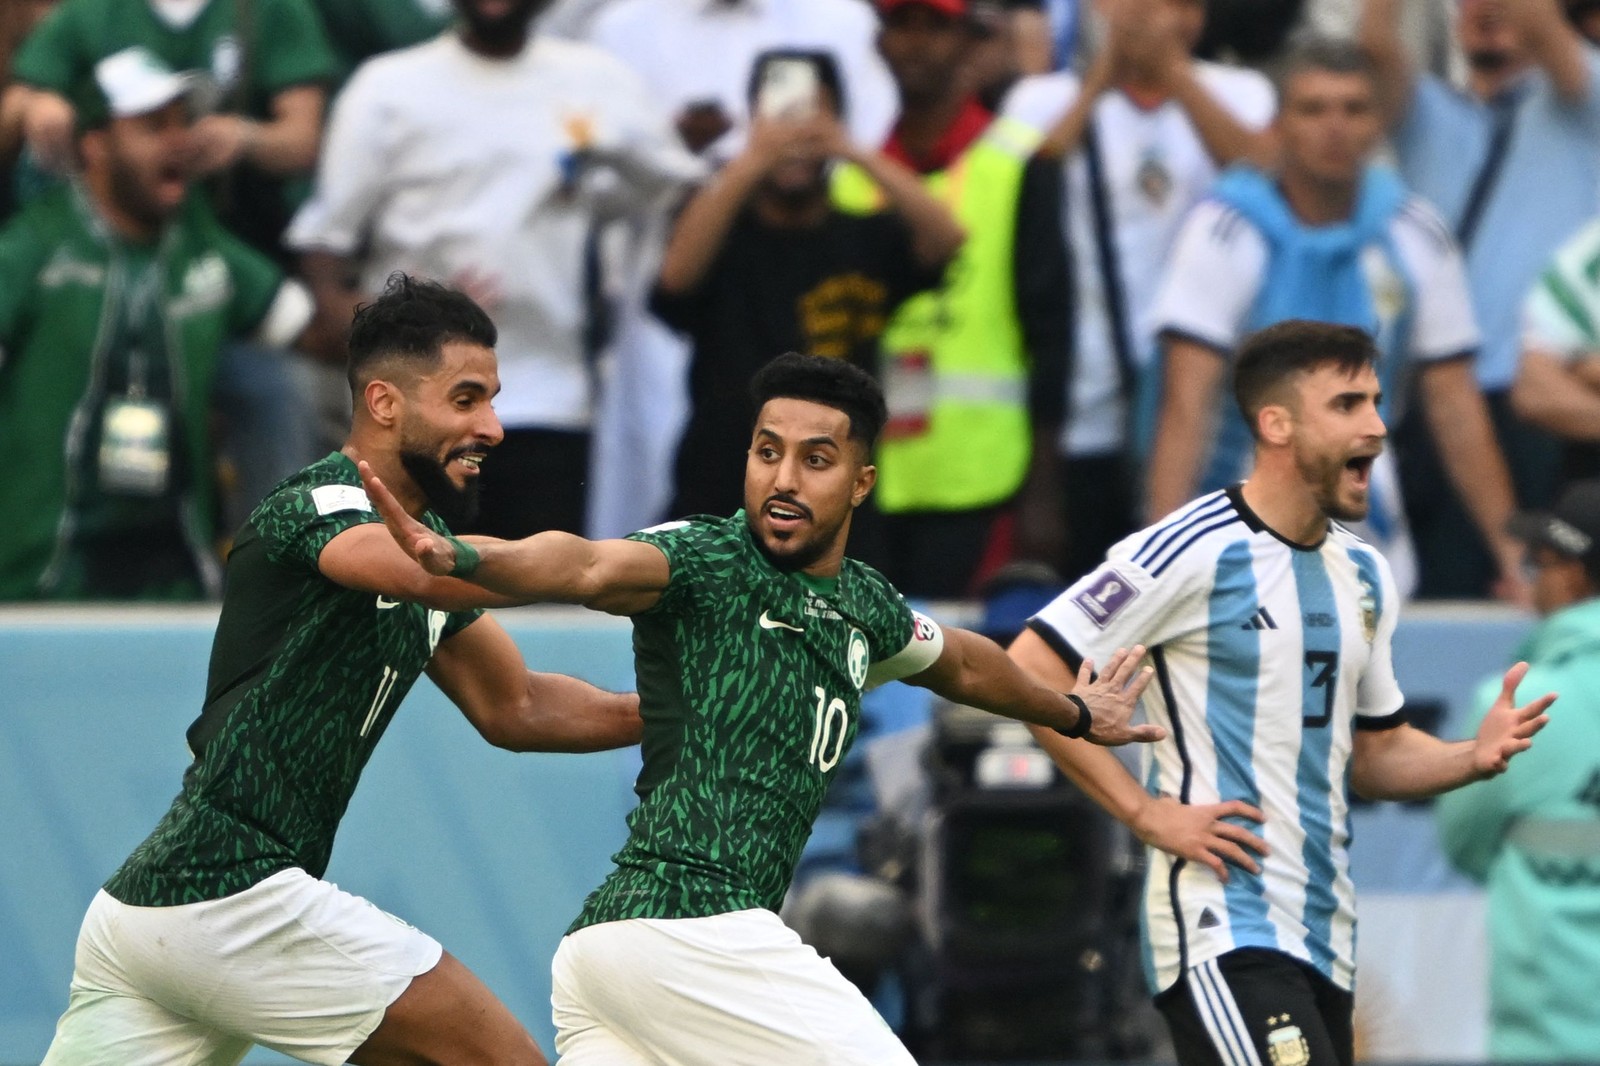 O meio-campista da Arábia Saudita, Salem Al-Dawsari, comemora depois de marcar o segundo gol da equipe  — Foto: Kirill KUDRYAVTSEV / AFP